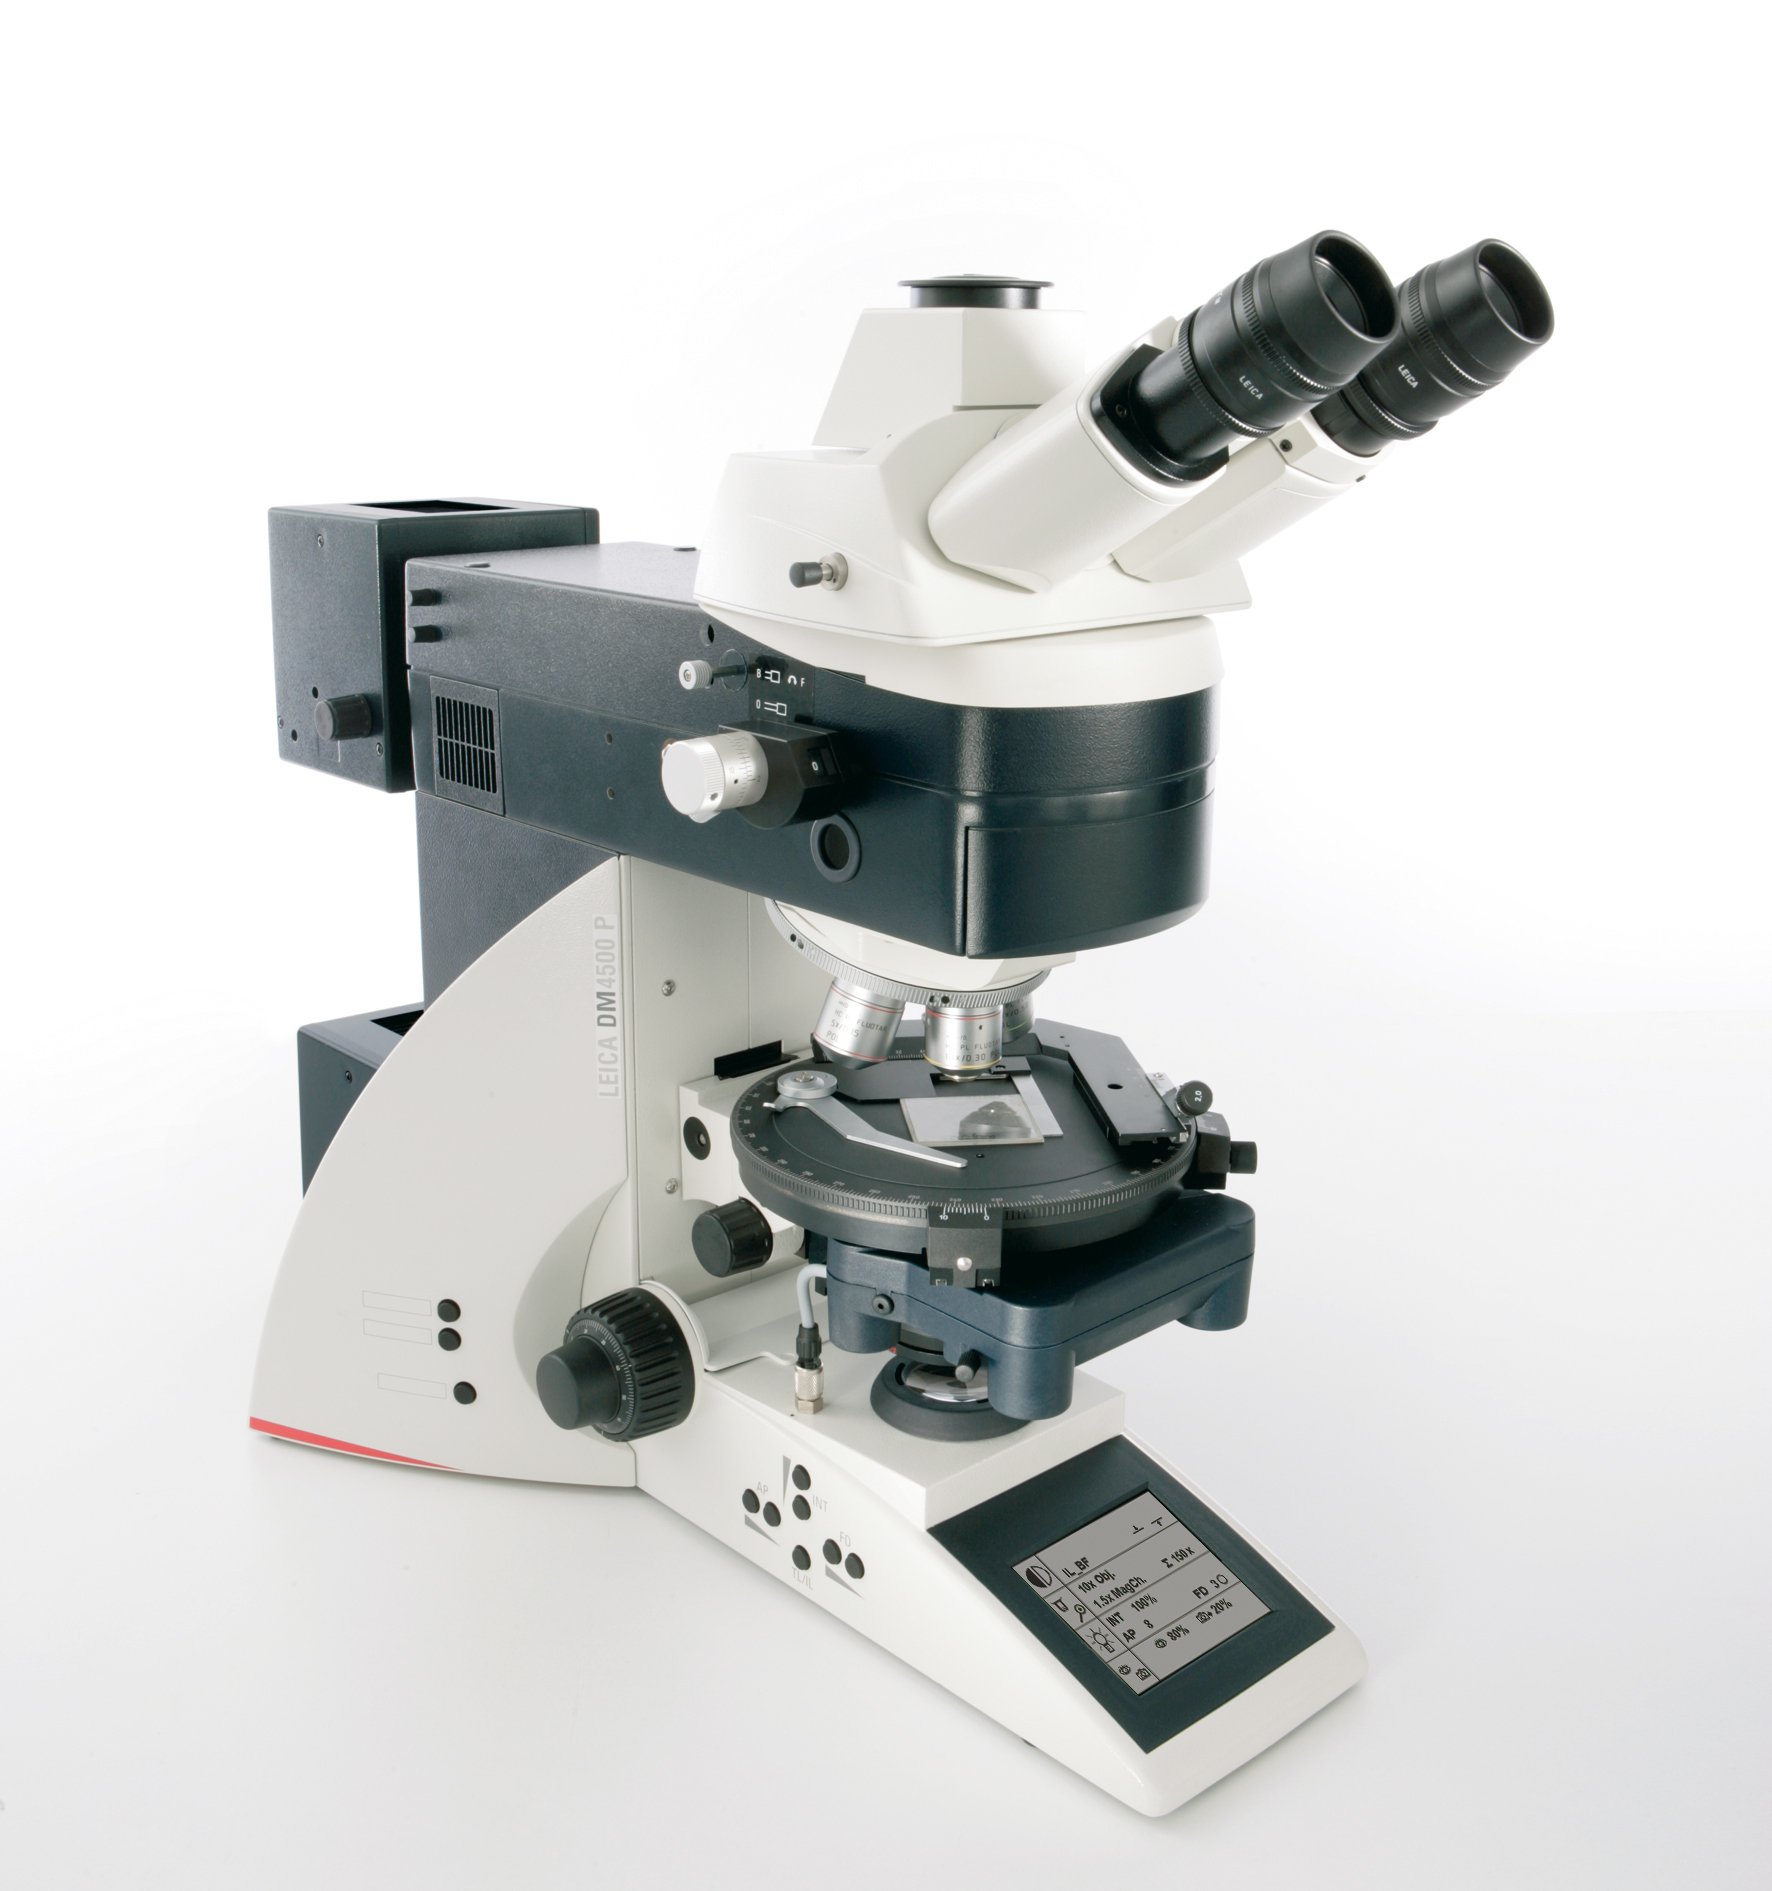 Il microscopio Leica DM4500 P assicura risultati di ricerche e controllo qualità coerenti e riproducibili.